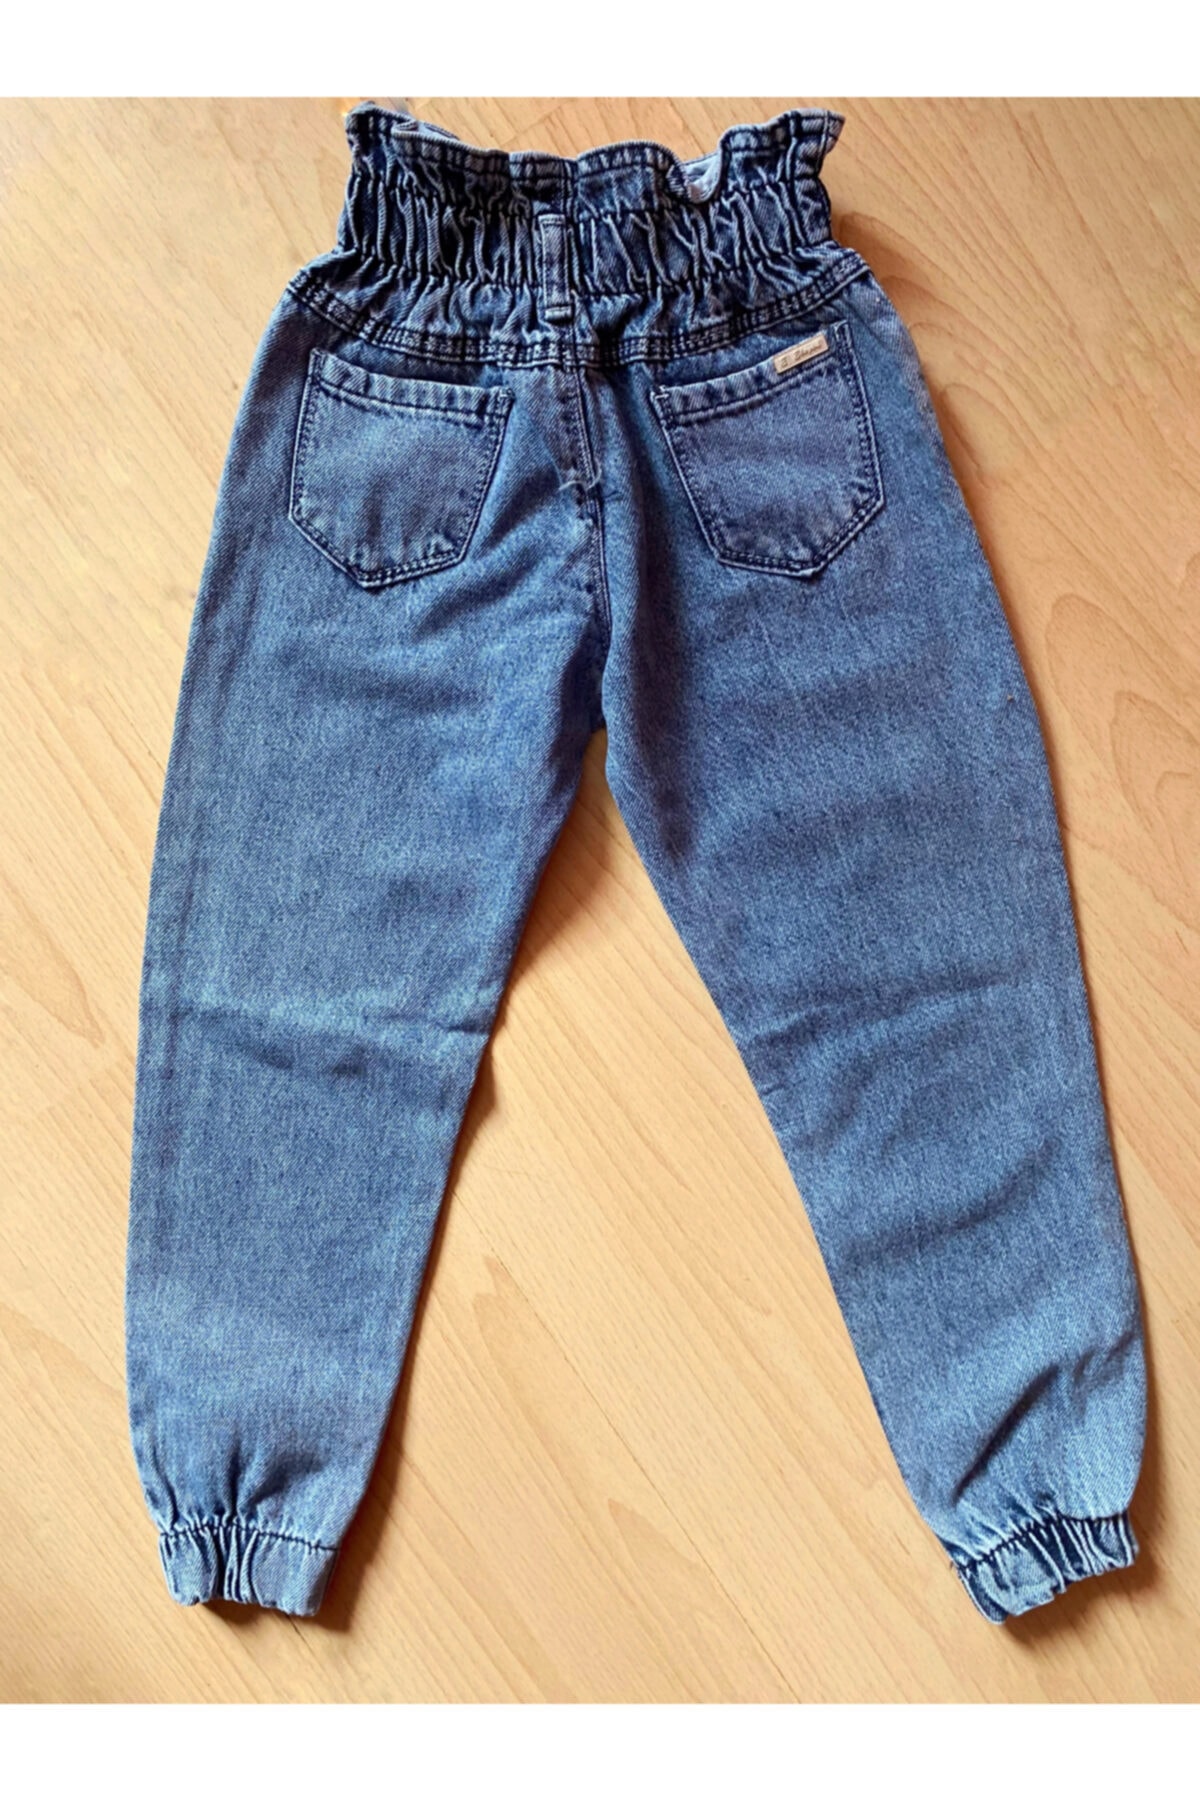 Blue 7Y discount 56% Zara jeans KIDS FASHION Trousers Jean 